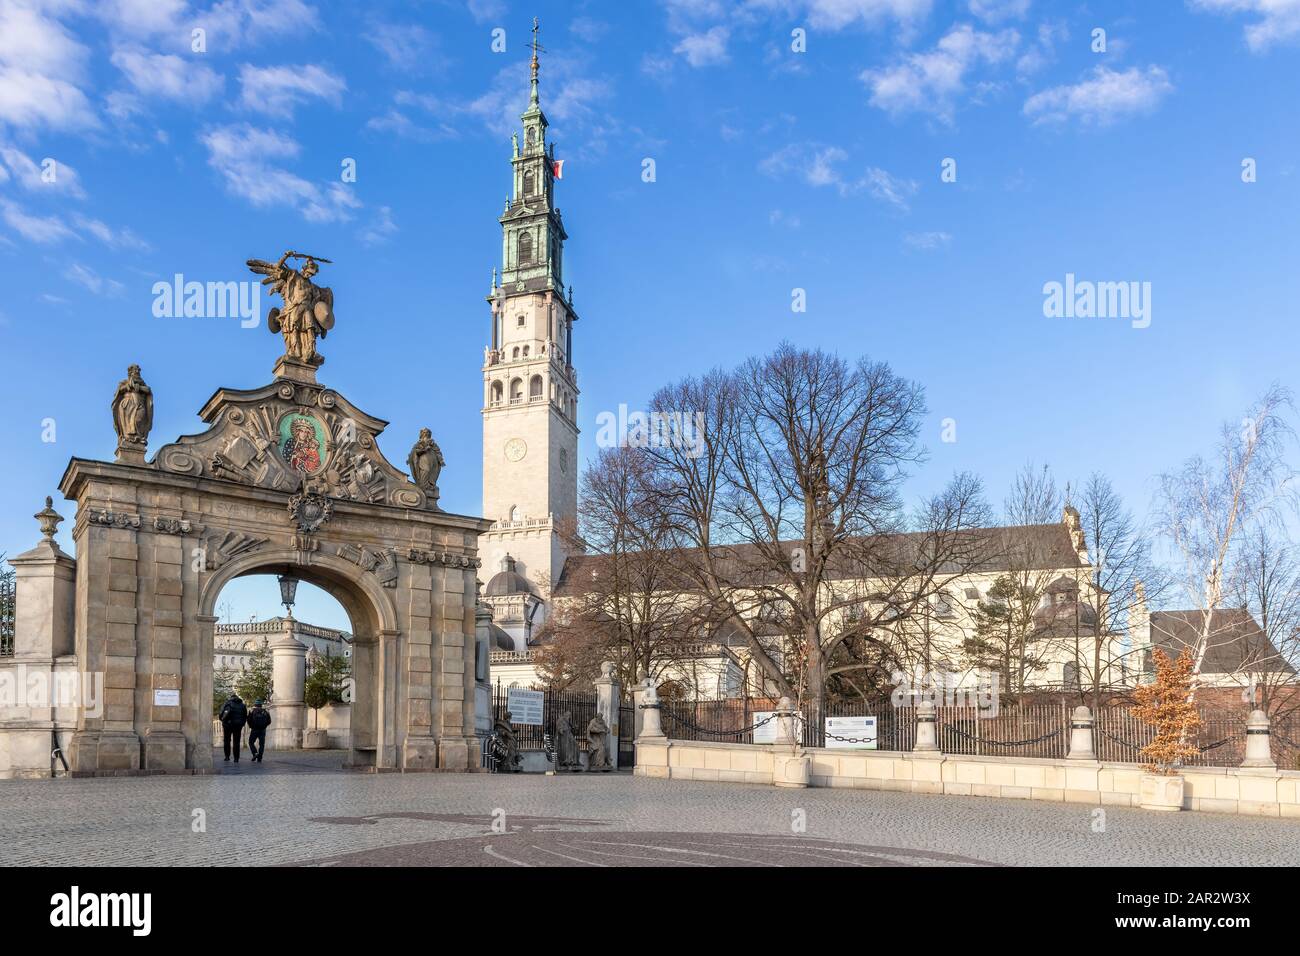 Czestochowa, Pologne - 12 décembre 2019: Vue sur le sanctuaire de Jasna Gora, monastère de Czestochowa, lieu de pèlerinage Très important et le plus populaire à Polan Banque D'Images